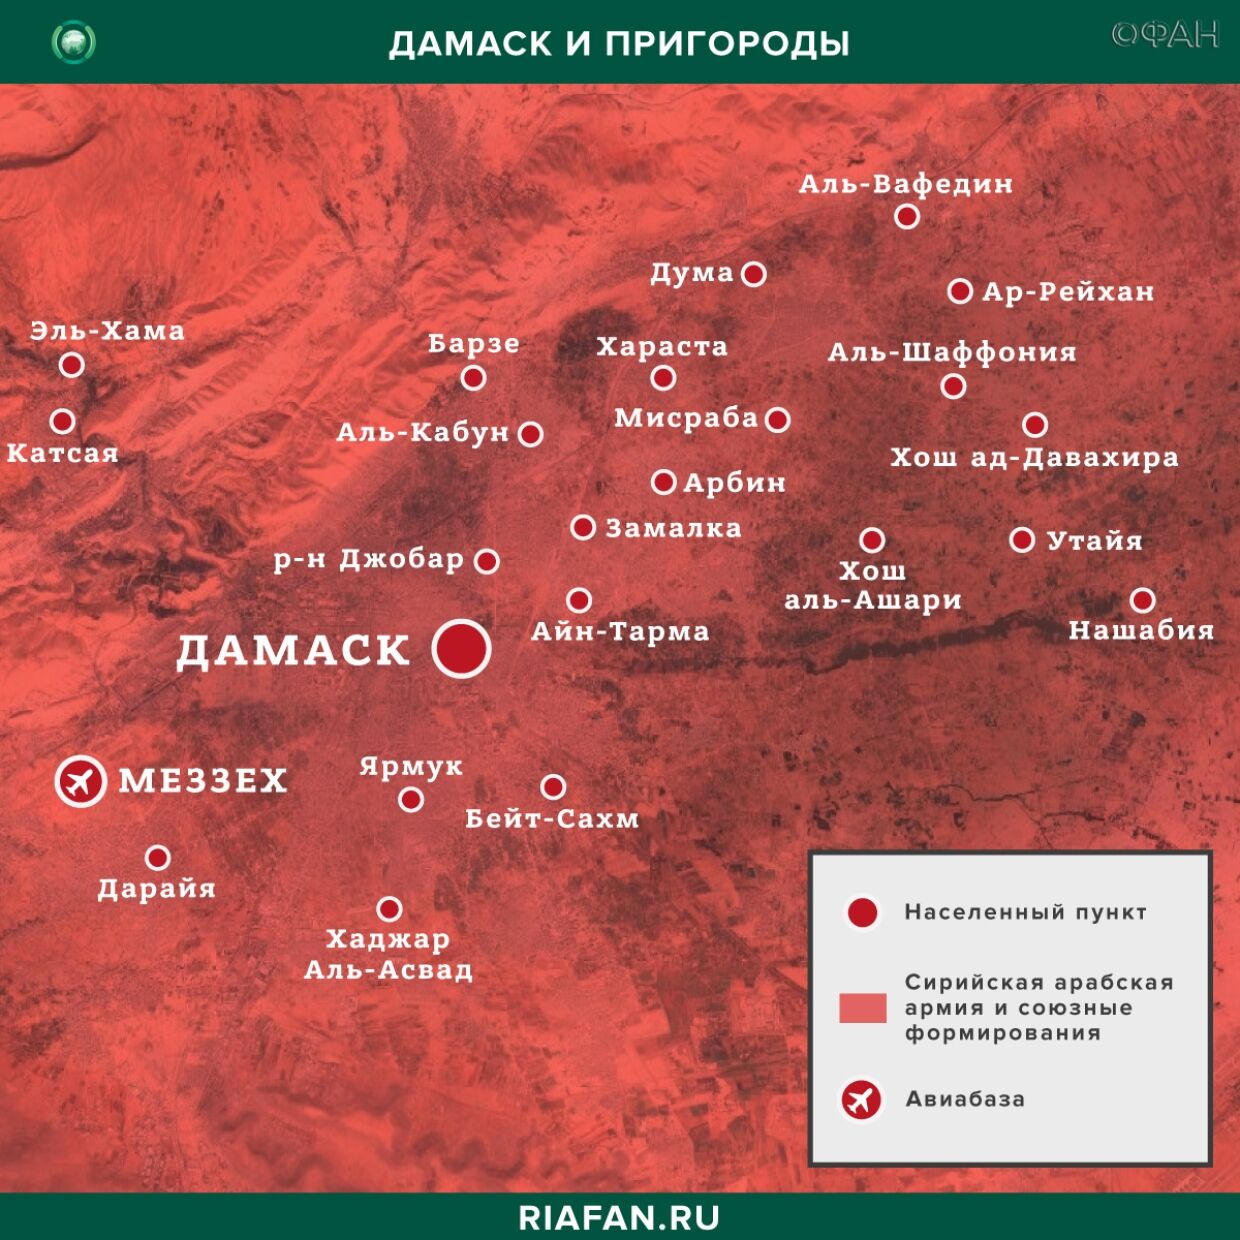 叙利亚每日结果 22 六月 06.00: SDF понесли потери при самоподрыве смертника ИГ* в Дейр-эз-Зоре, взрыв в Дамаске